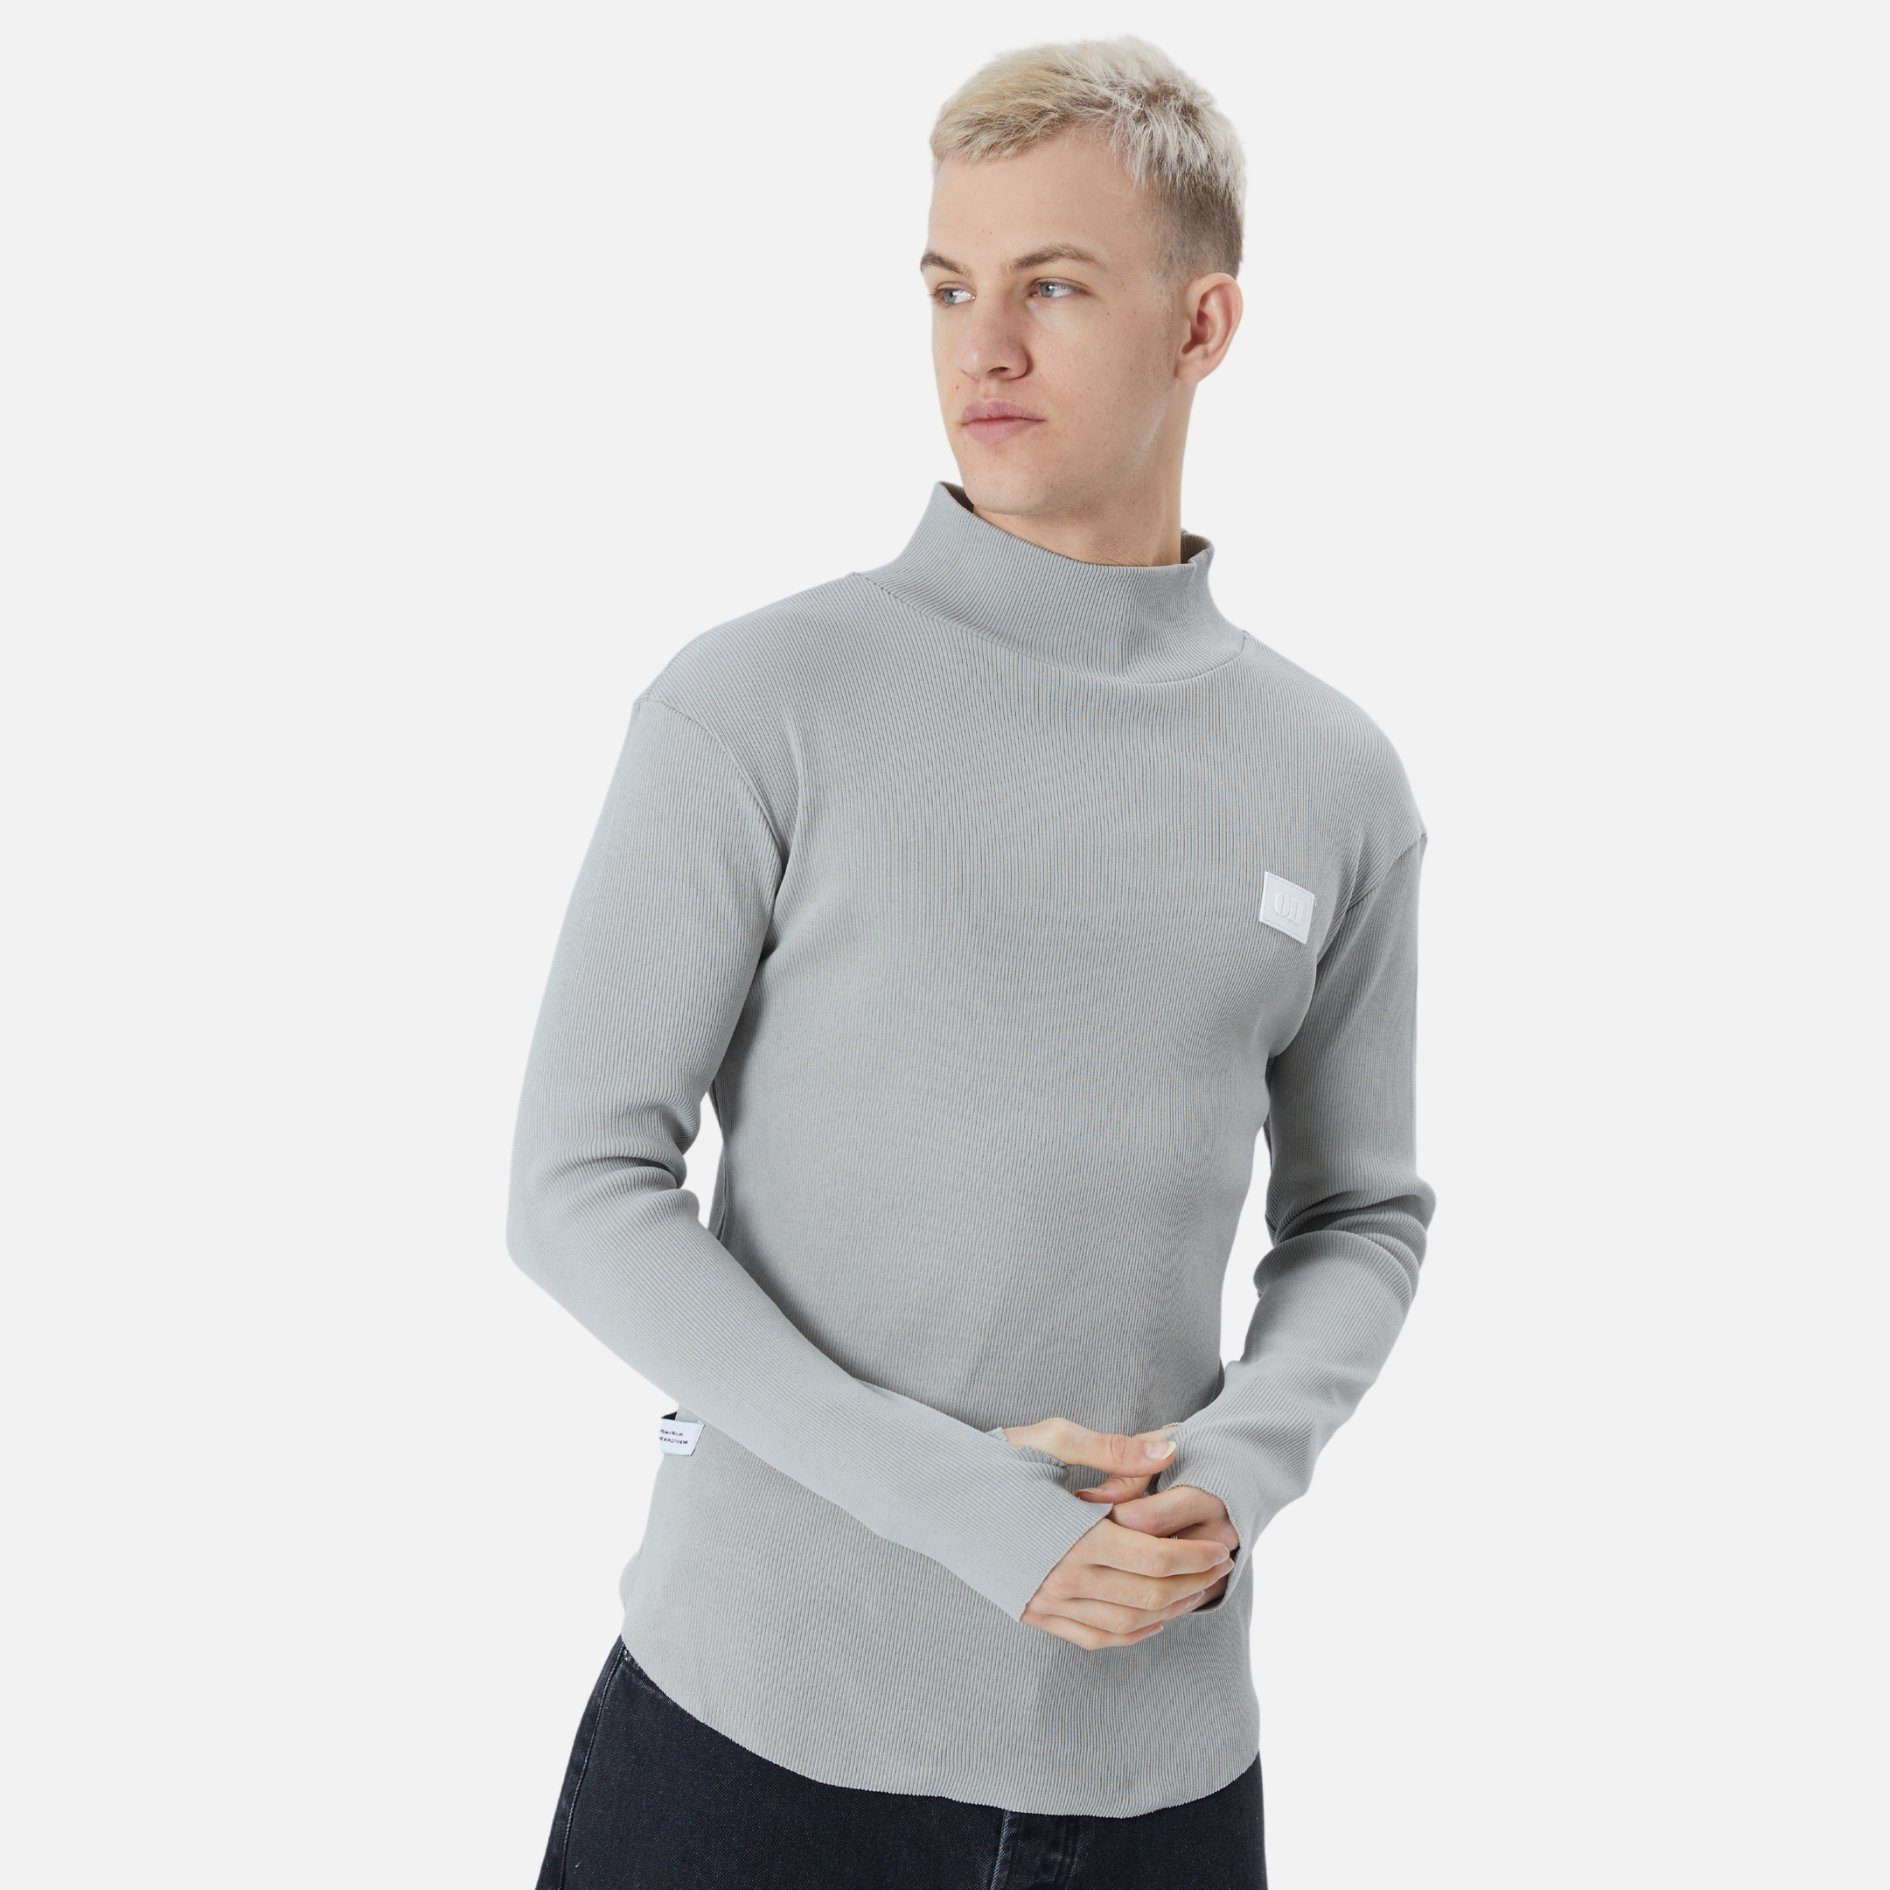 Fit Sweatshirt Rundhals Grau COFI Herren Sweatshirt Regular Pullover Casuals